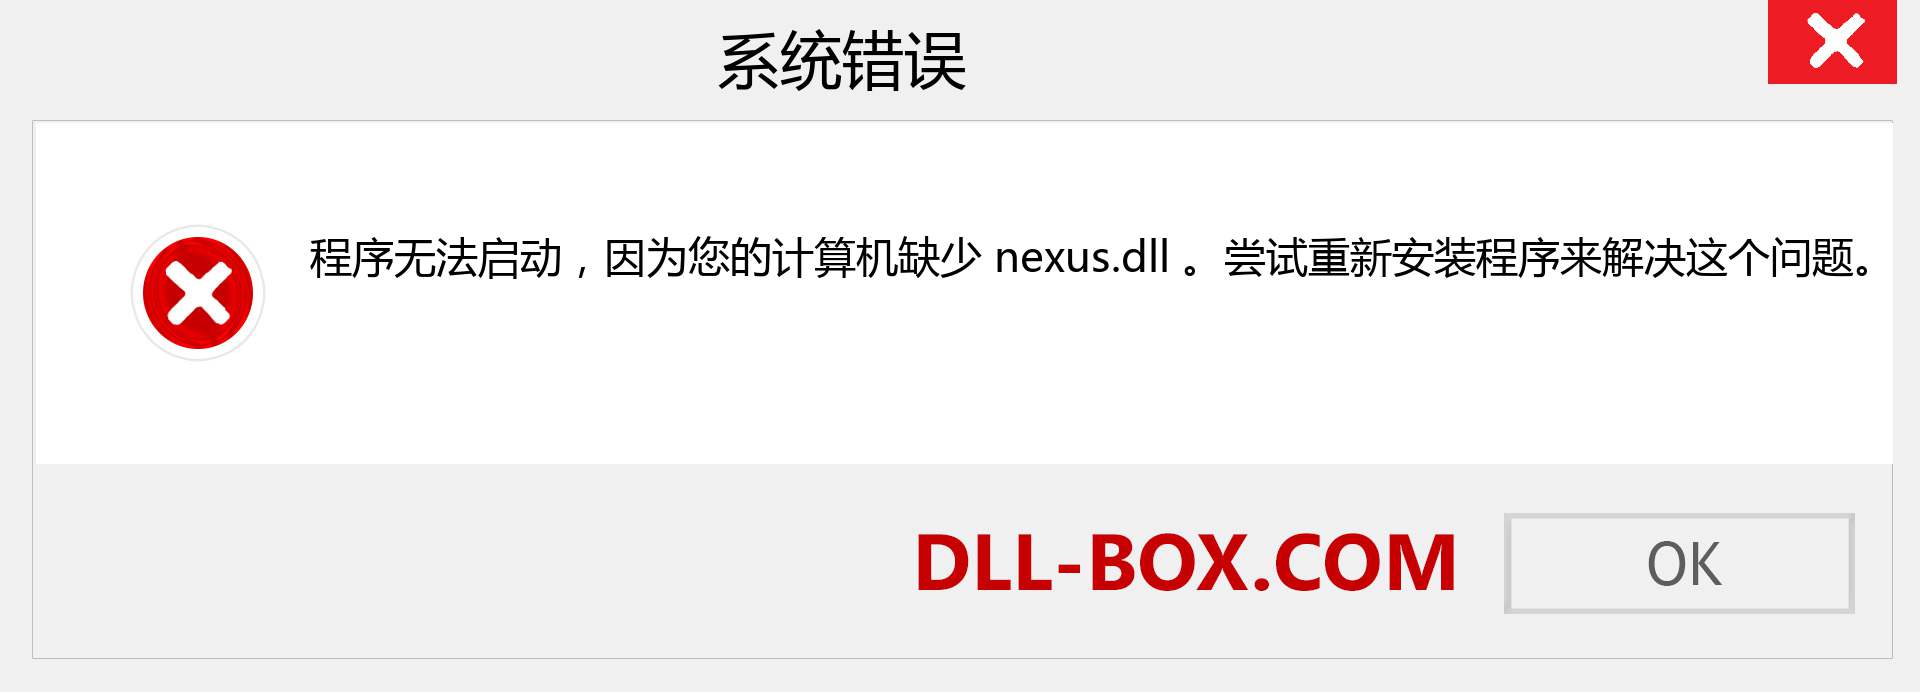 nexus.dll 文件丢失？。 适用于 Windows 7、8、10 的下载 - 修复 Windows、照片、图像上的 nexus dll 丢失错误